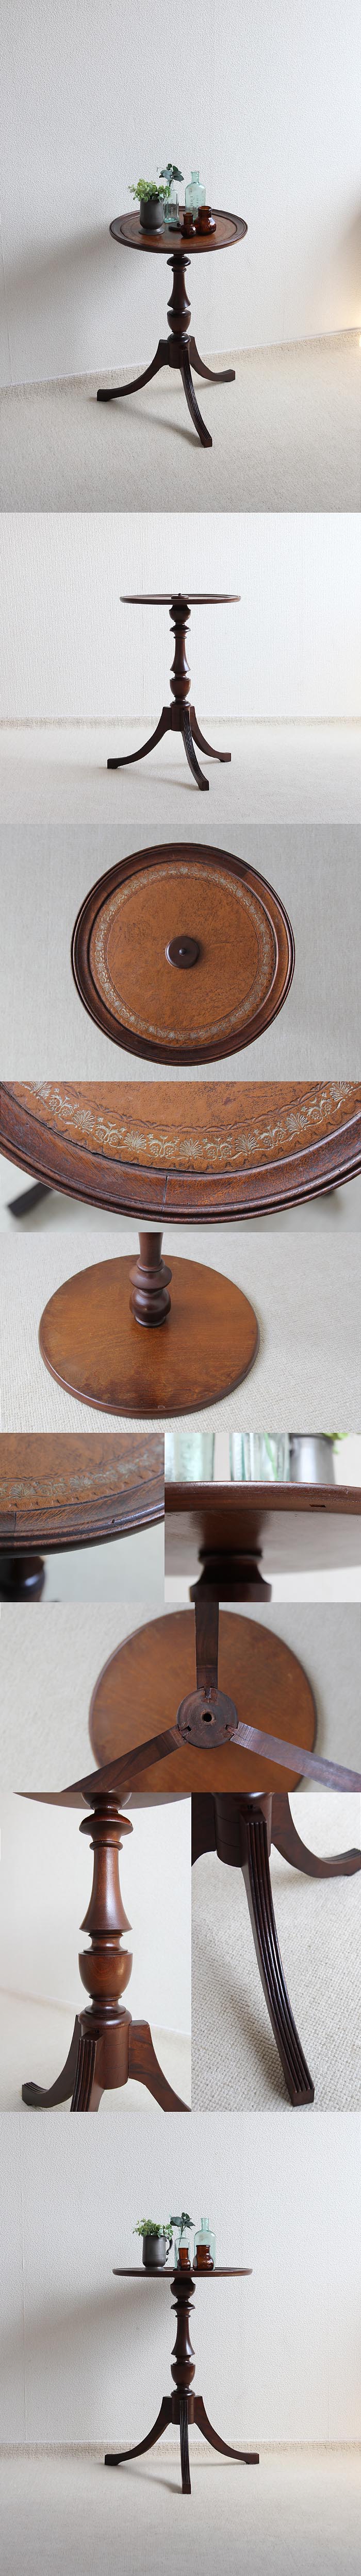 イギリス アンティーク ワインテーブル レザートップ 木製 革張り インテリア 家具「飾り台」V-781